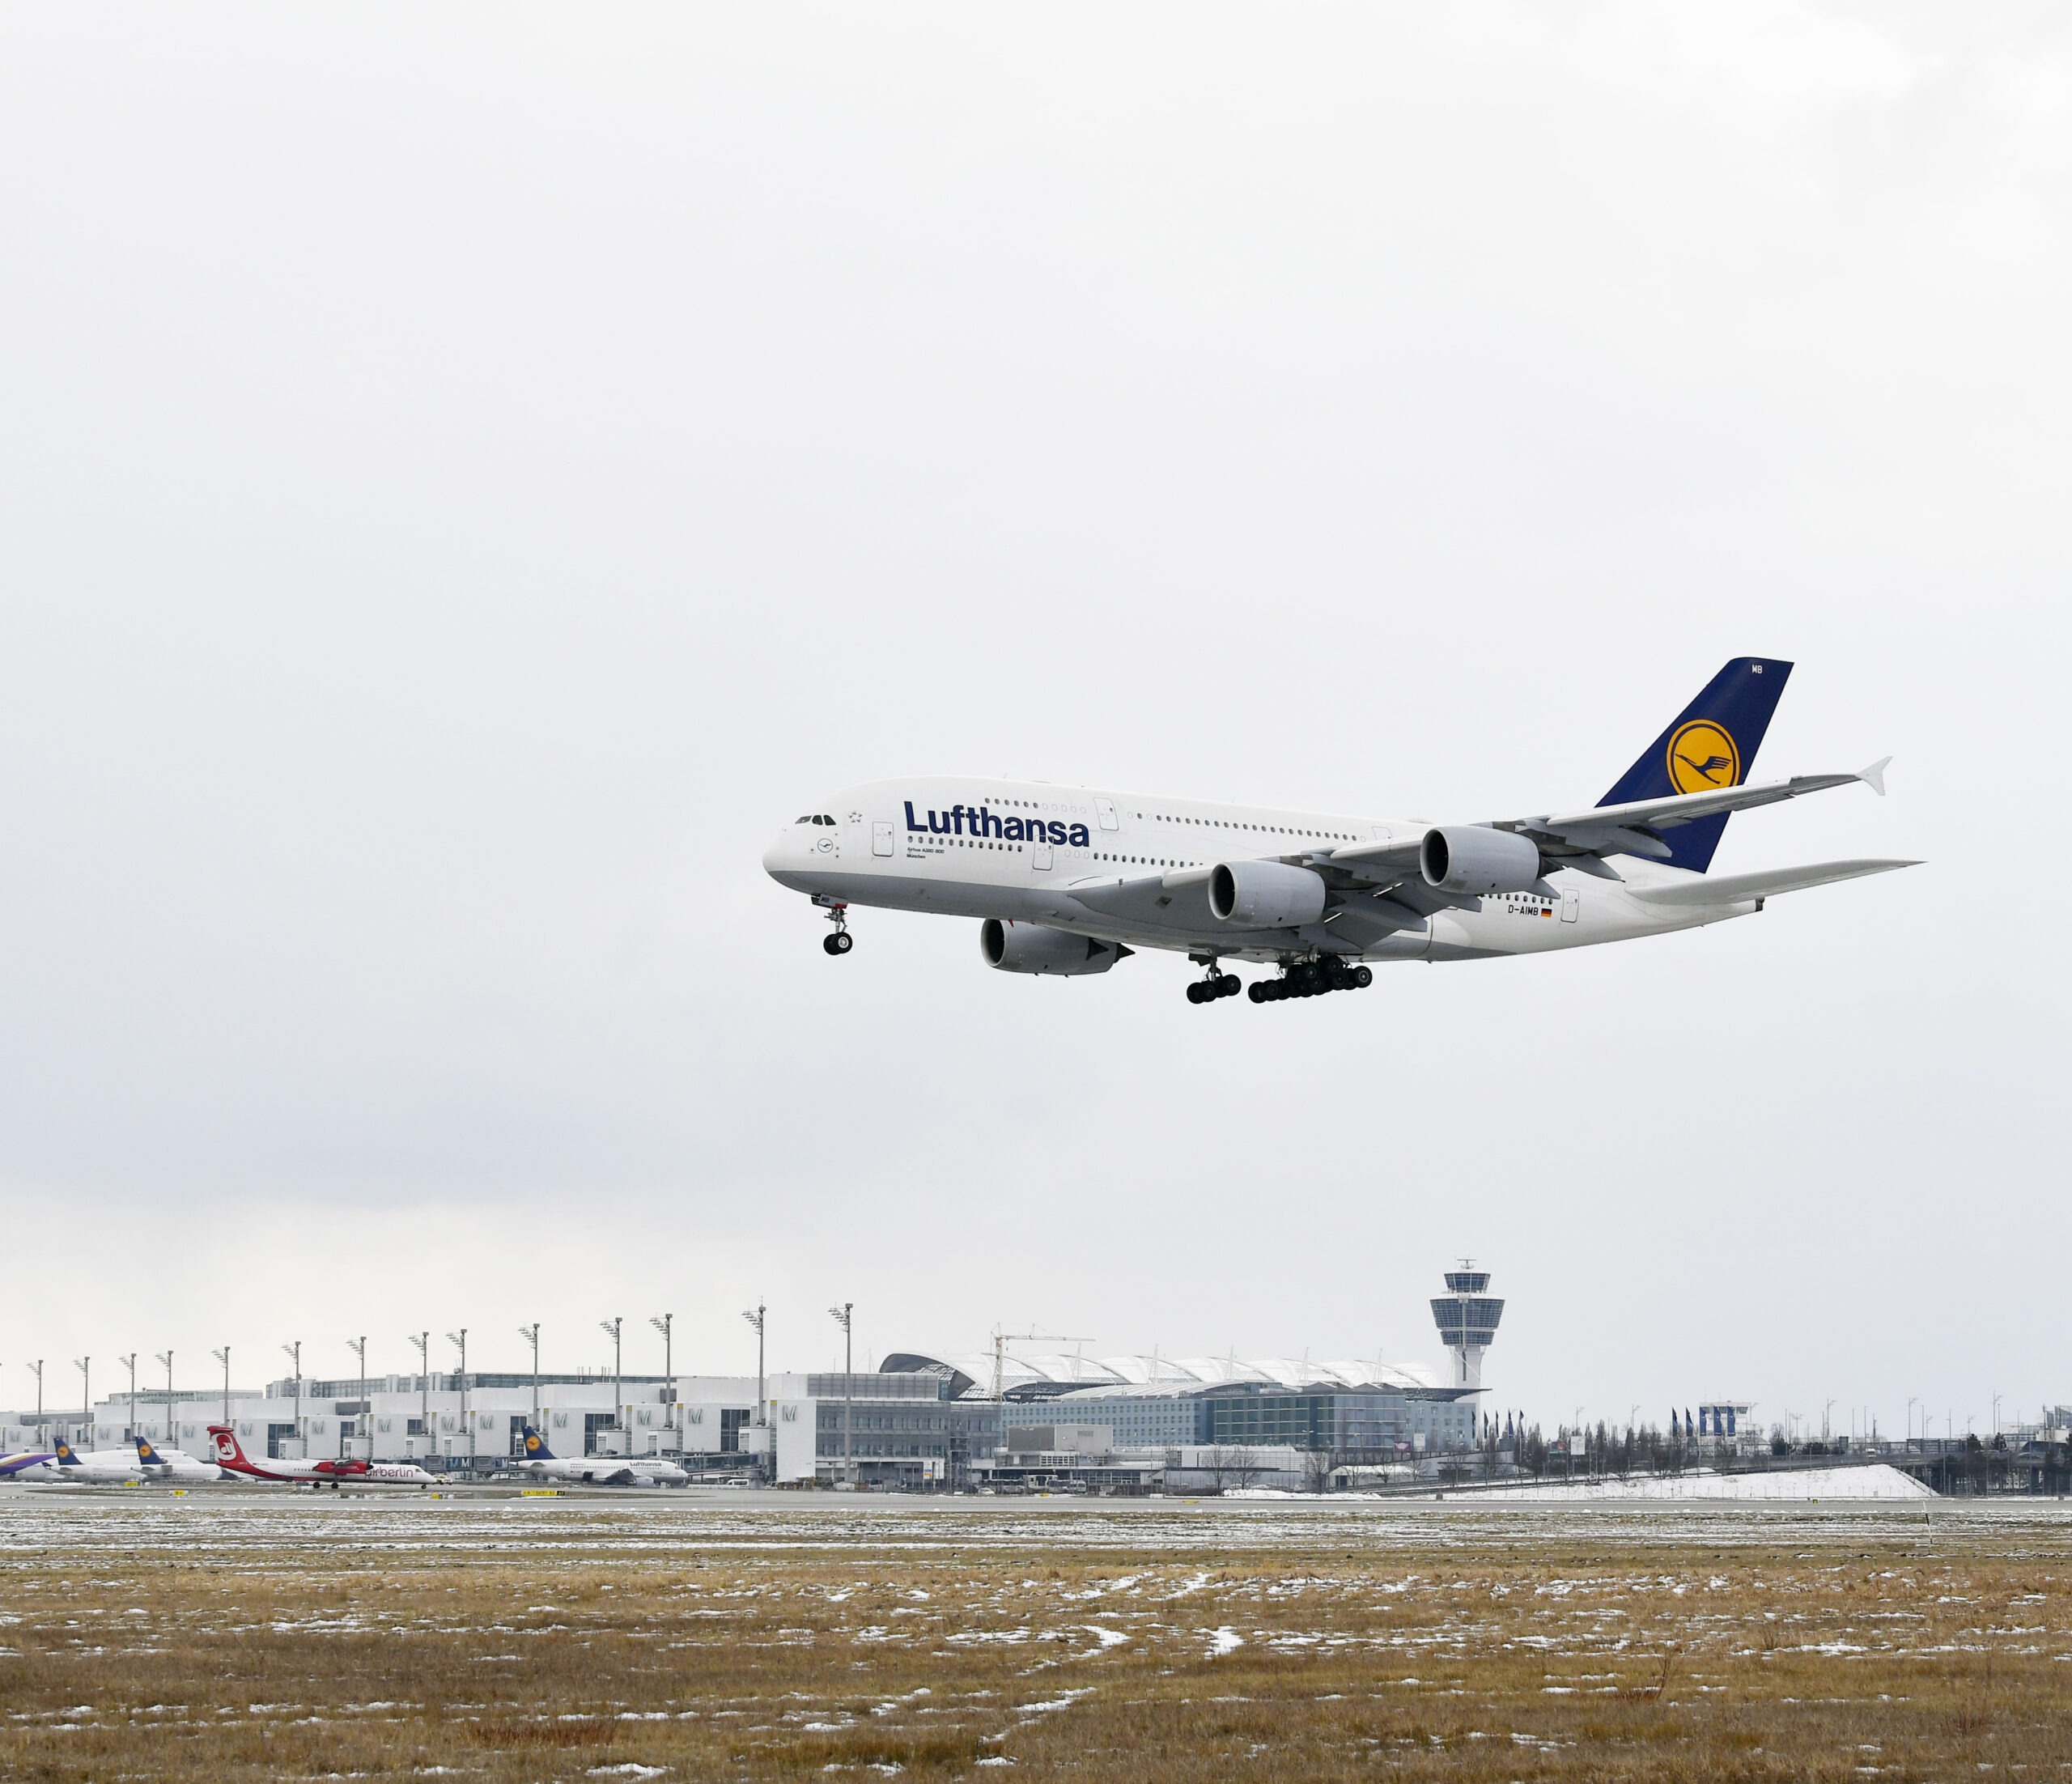 Lufthansa reactivates Airbus A380 aircraft.